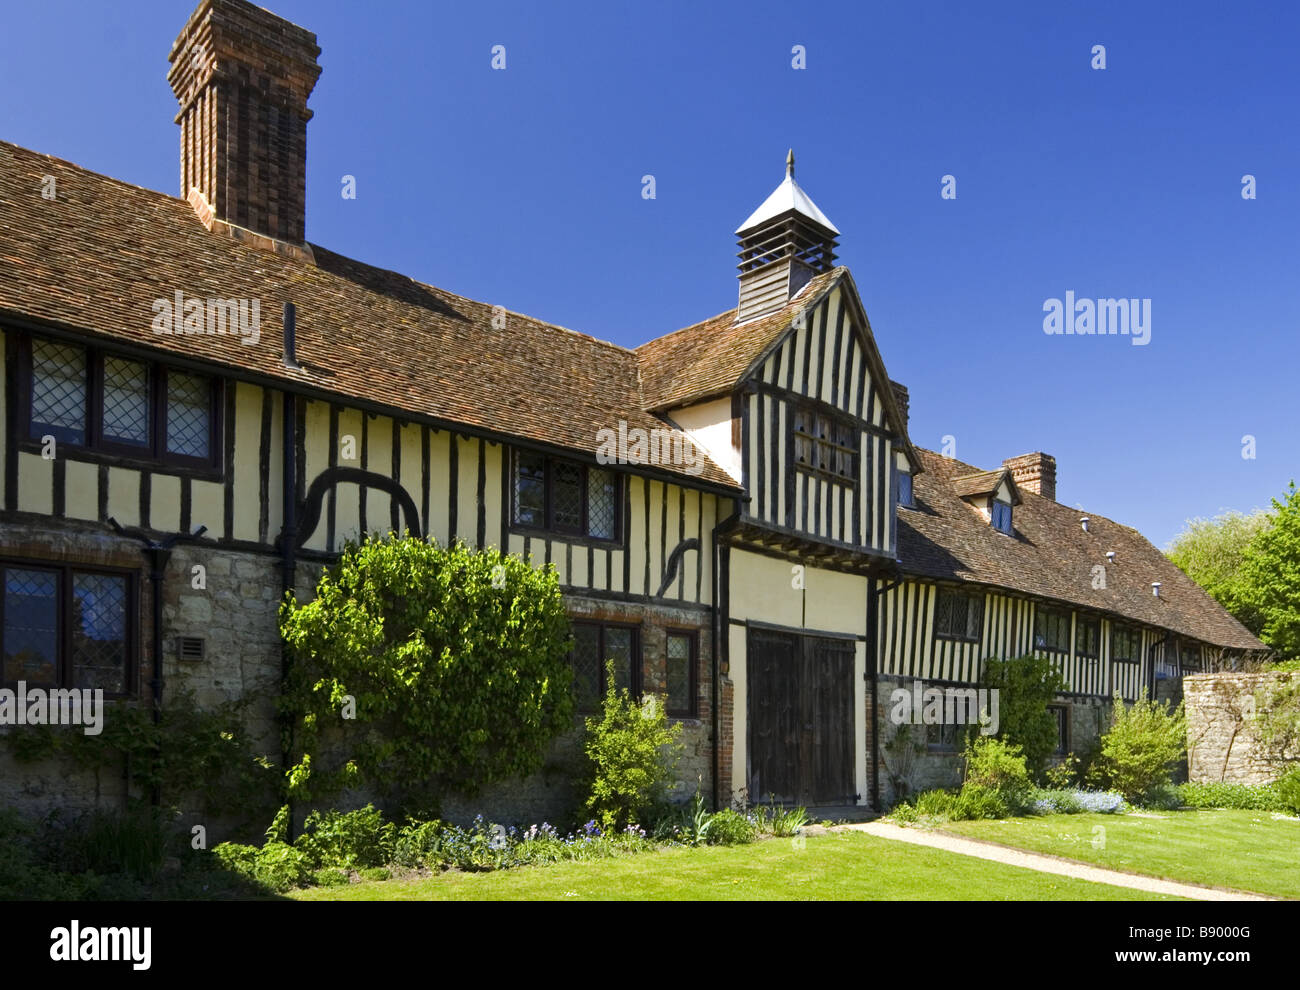 Les cottages du xve siècle avec un pigeonnier sur le gable, à Ightham Mote, Sevenoaks, Kent. Banque D'Images